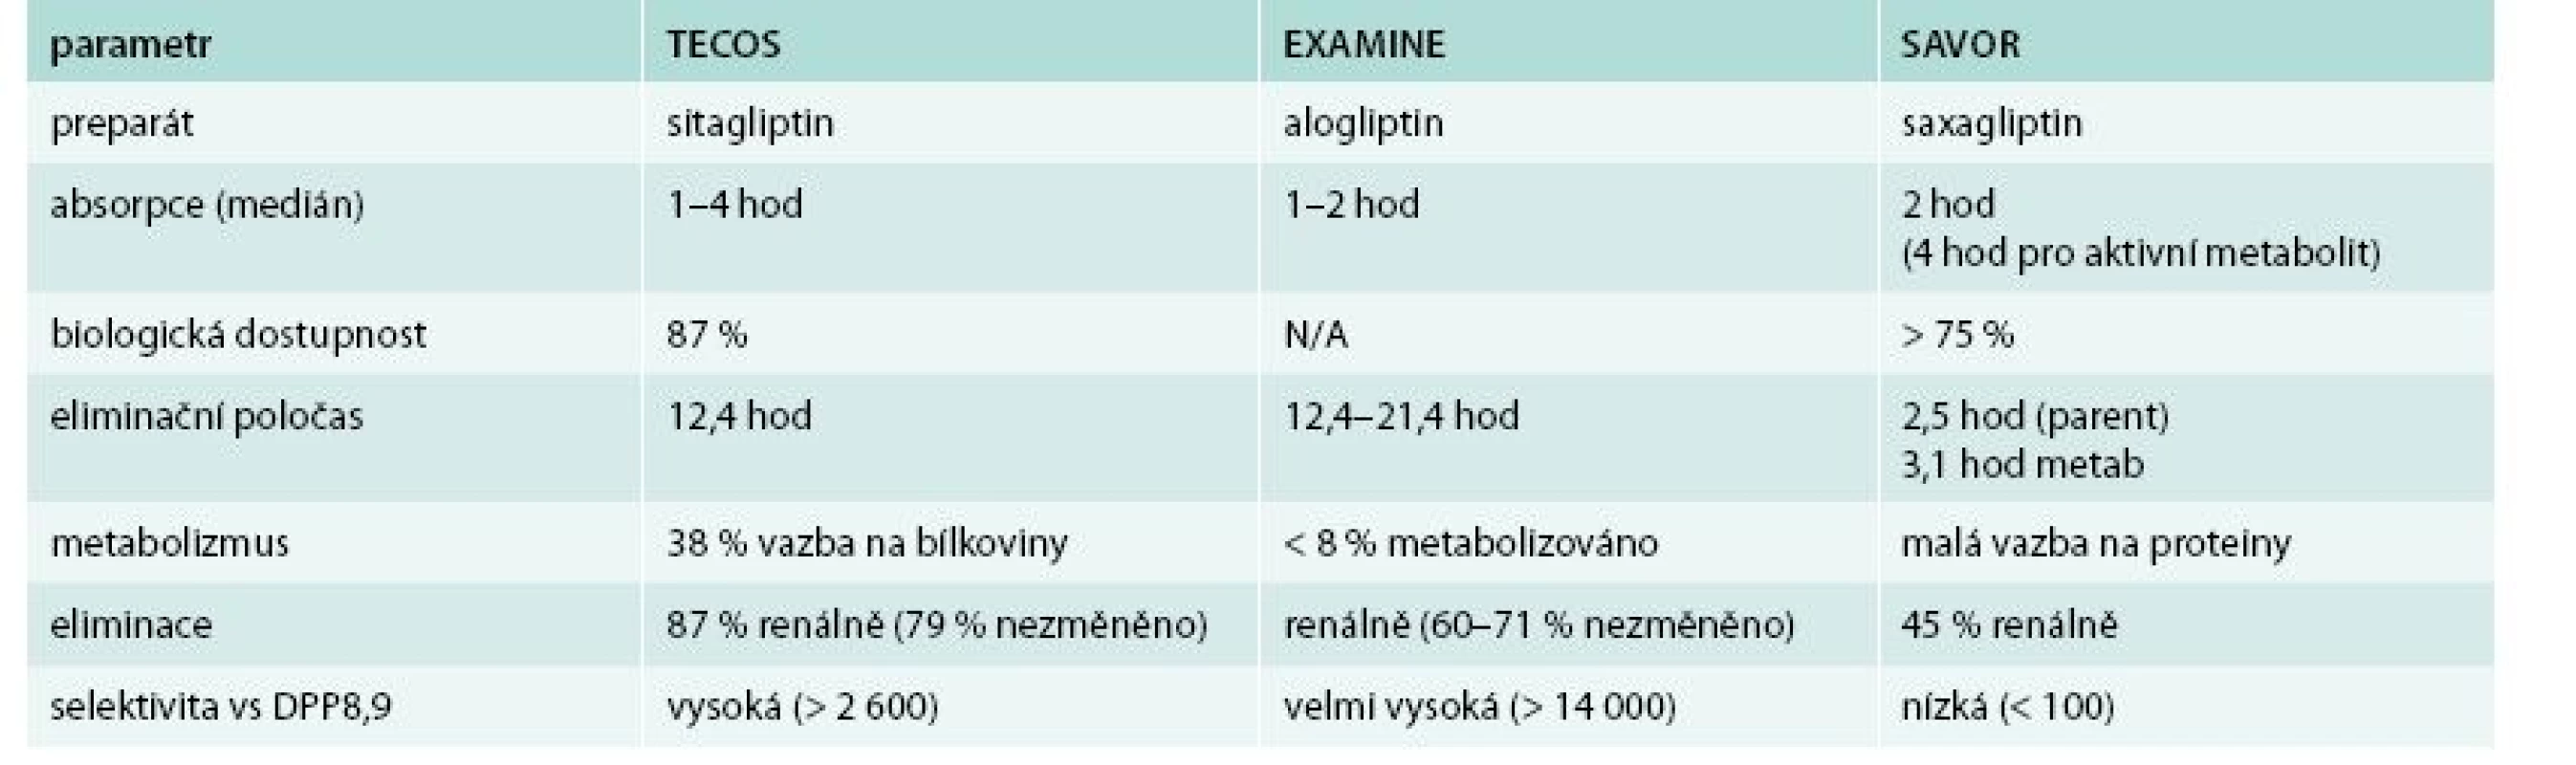 Srovnání farmakologických vlastností jednotlivých preparátů